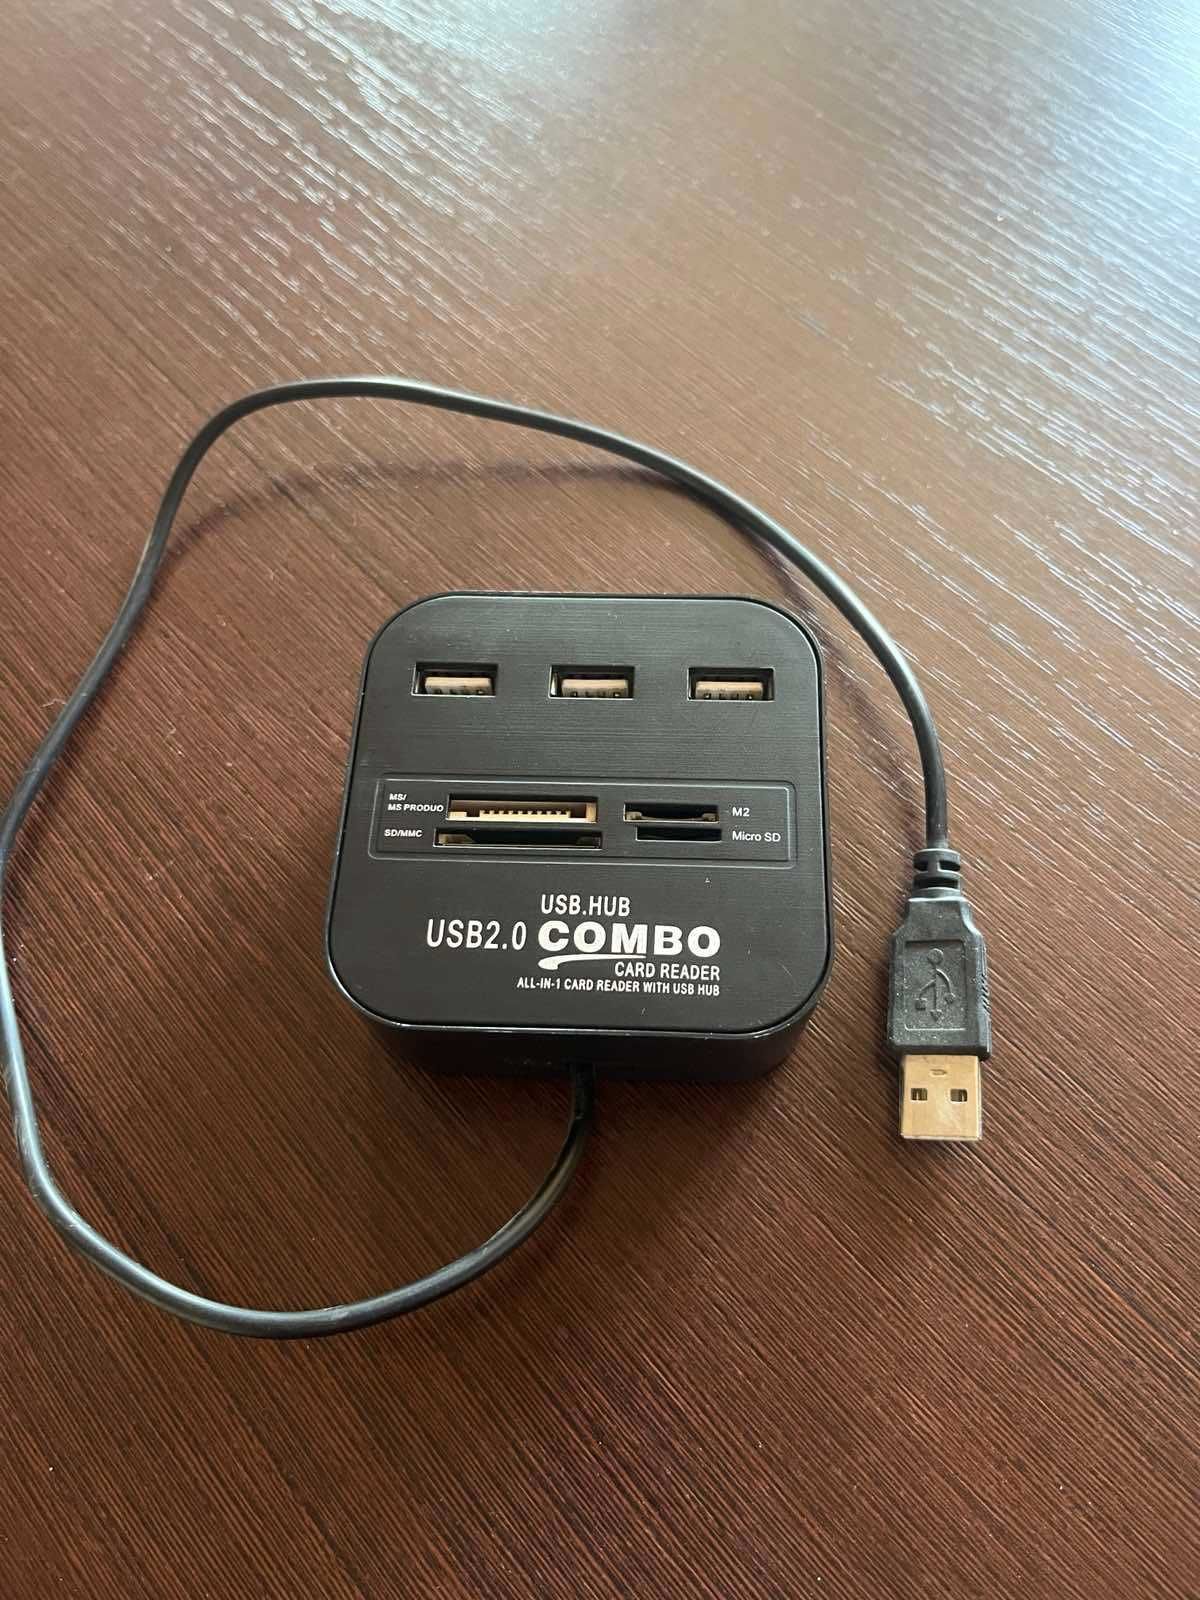 Універсальний картридер COMBO All in 1 Хаб 3*USB 2.0